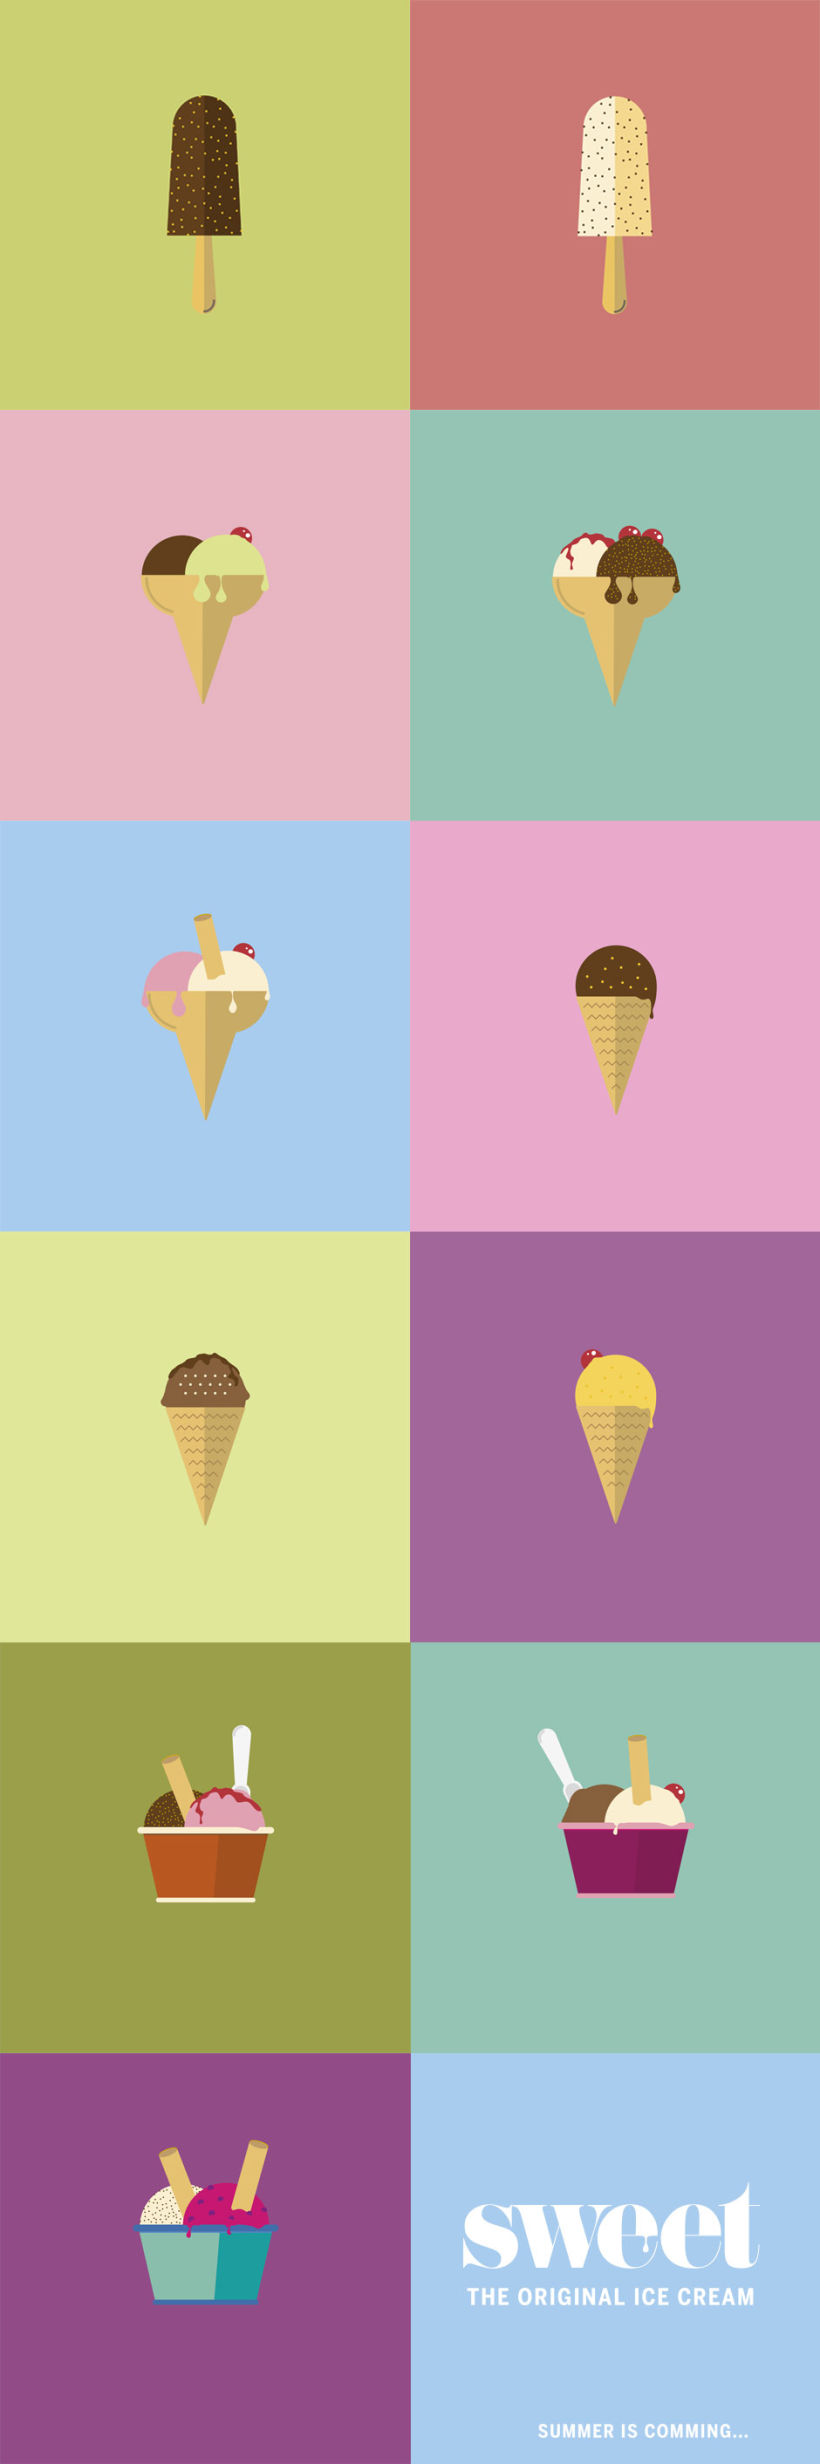 Sweet ice cream poster 2